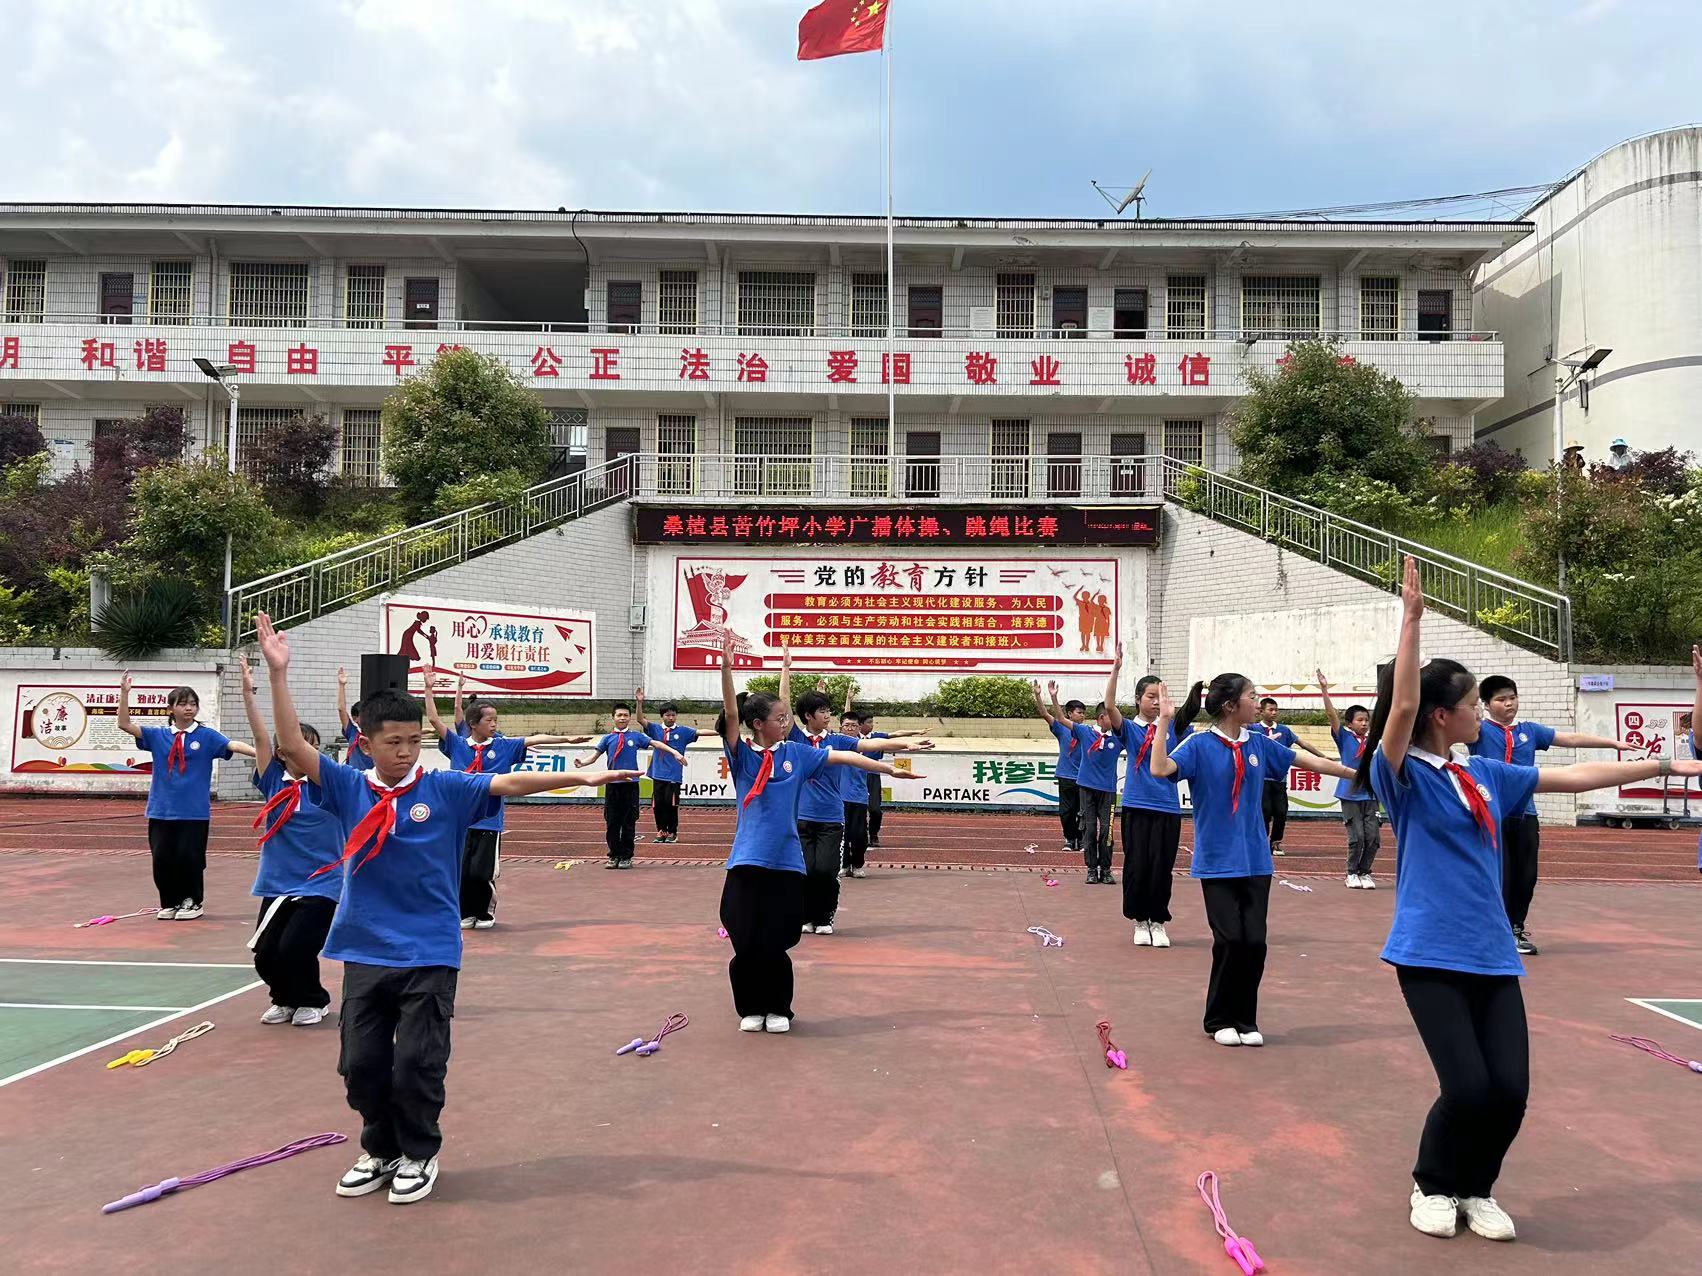 苦竹坪小学举行广播体操、跳绳比赛